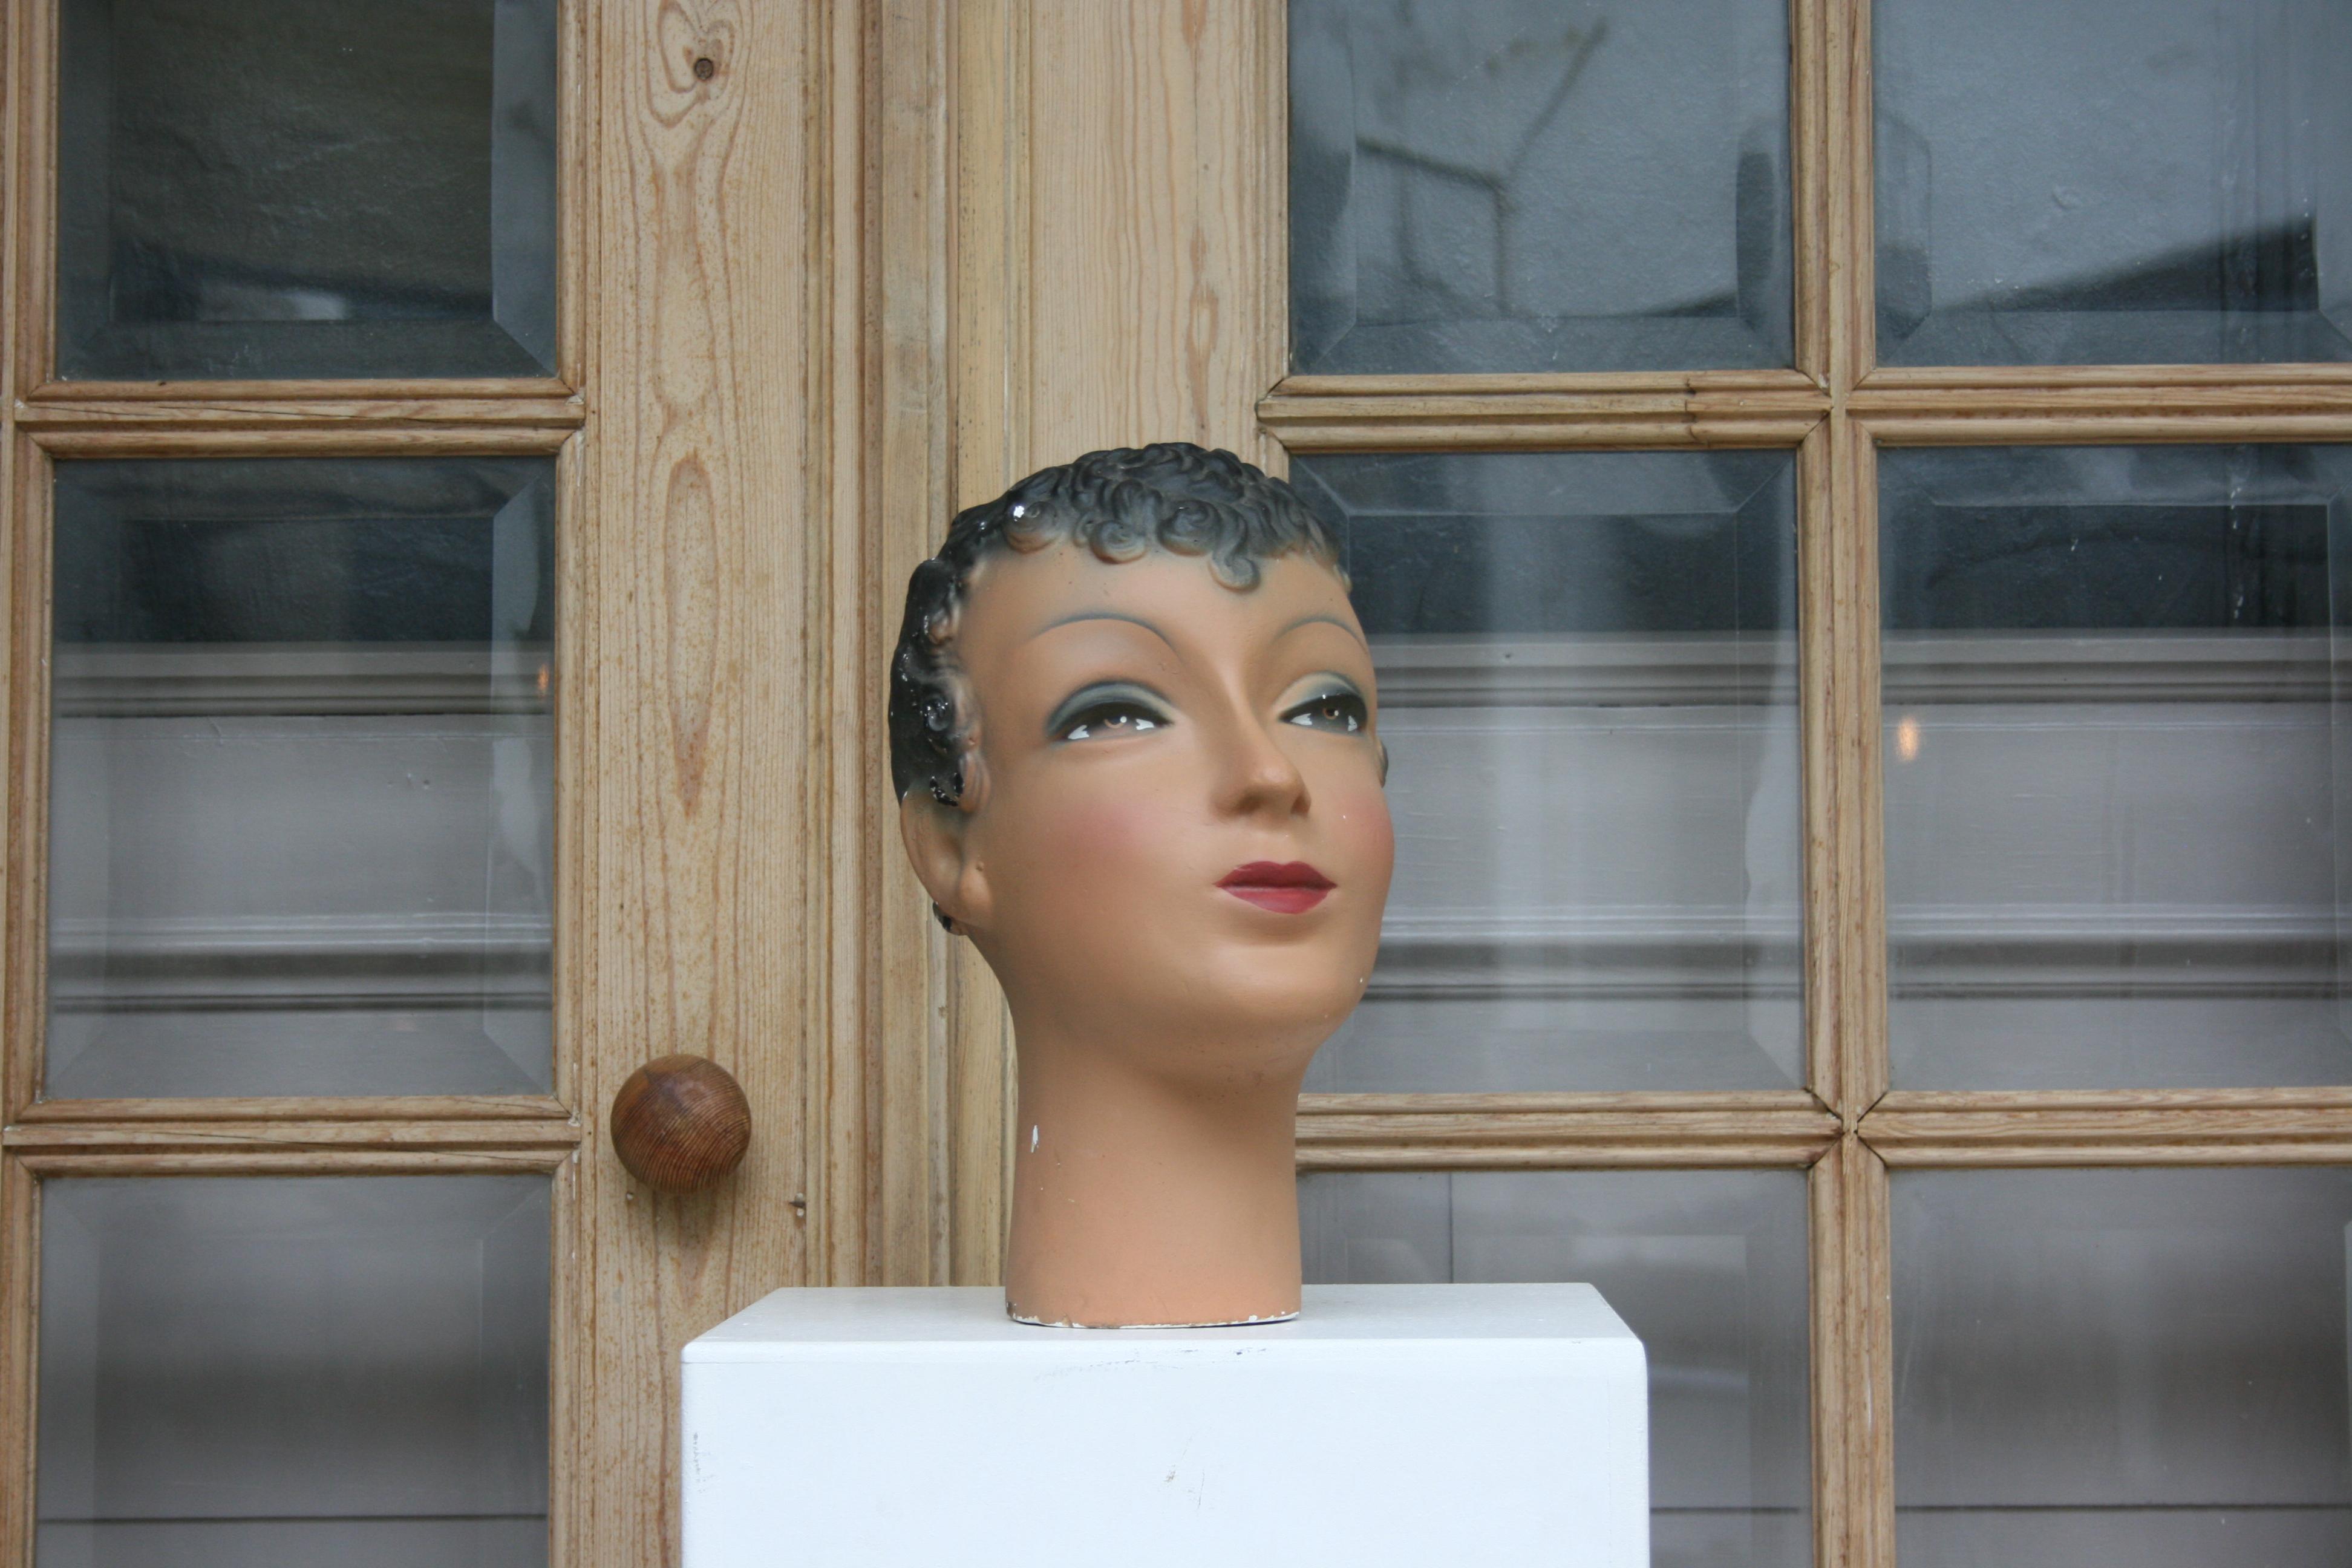 Die Schaufensterpuppe einer jungen Dame aus Brüssel in Belgien stammt aus den 30er Jahren des 20. Jahrhunderts und ist aus Gips gefertigt. Es ist polychrom bemalt. Die Dame ist geschminkt und hat geschminkte Augen. Die Marke 